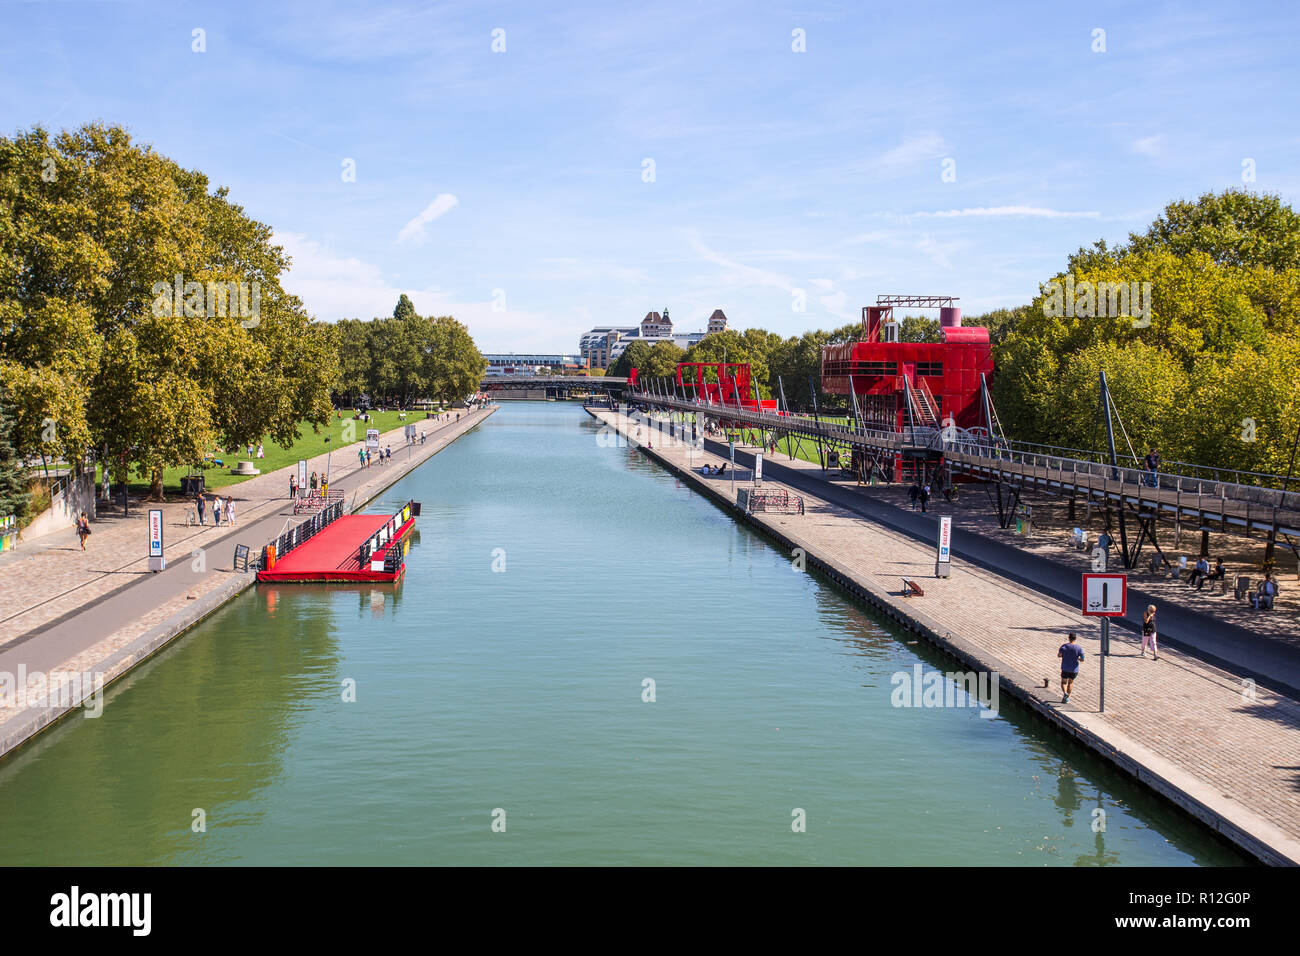 PARIS, FRANCE, 9 septembre 2018 - La Cité des Sciences et de l'industrie dans la Villette Park (Parc de la Villette) à Paris, France. Banque D'Images